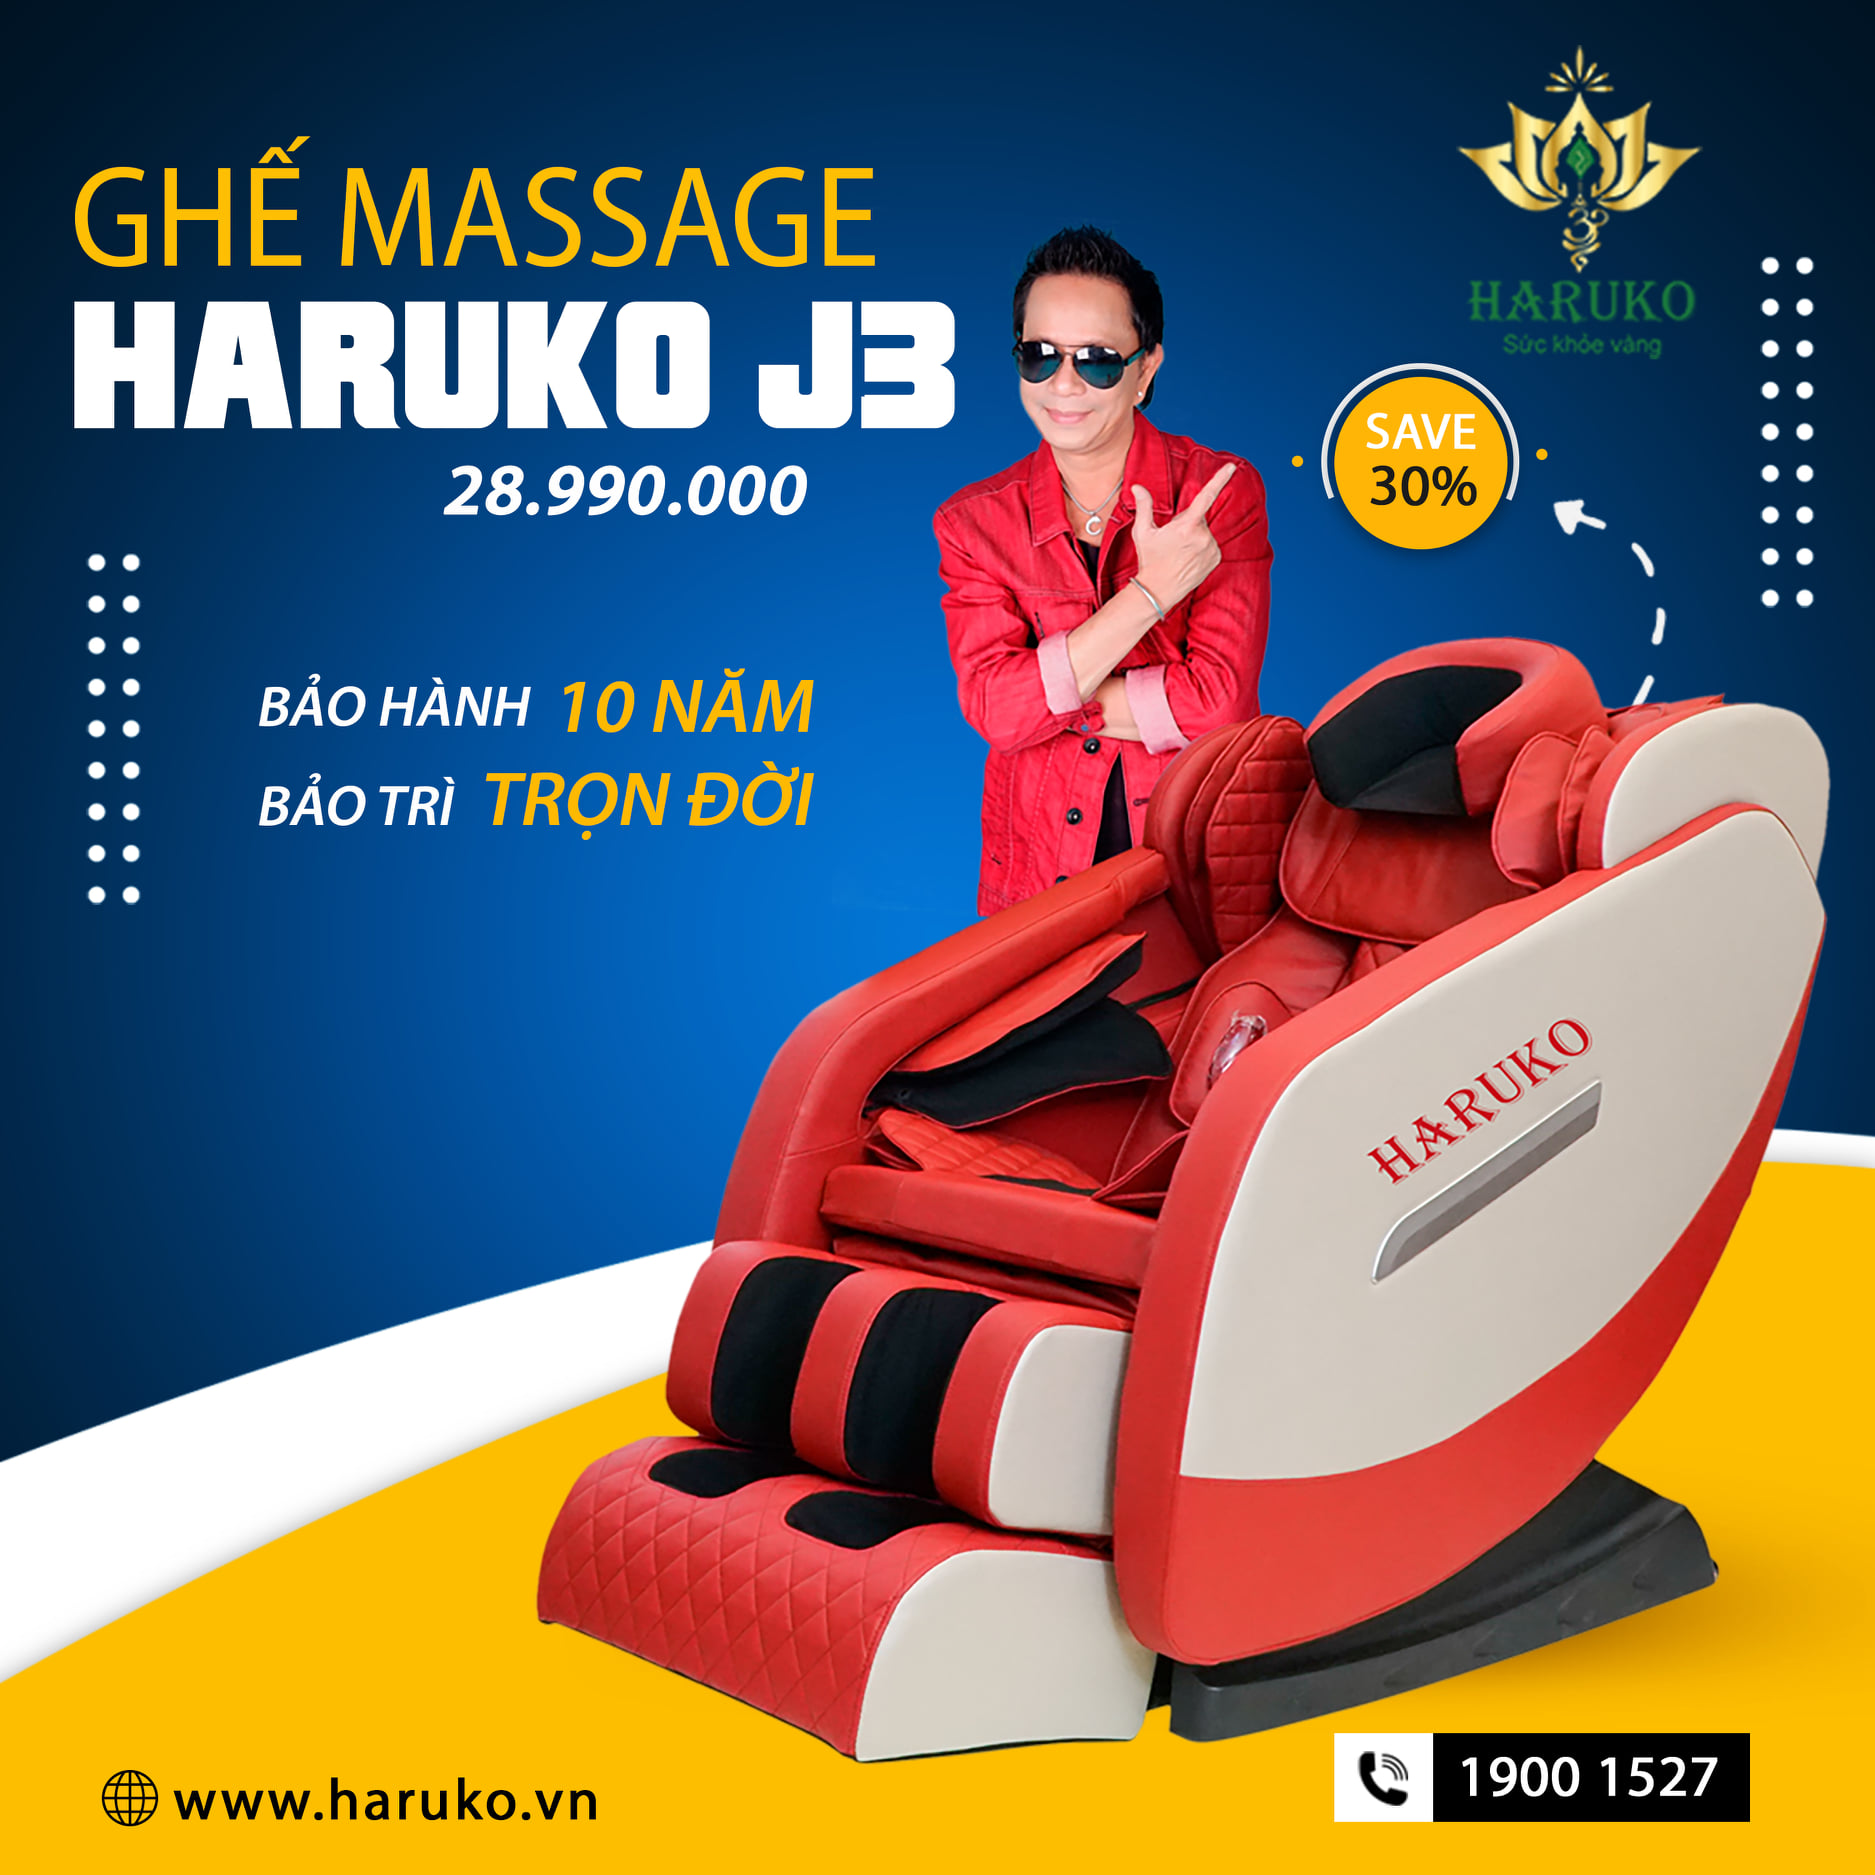 Ghế massage Haruko-J3 là dòng sản phẩm tầm trung với những tính năng hiện đại dễ dàng sử dụng